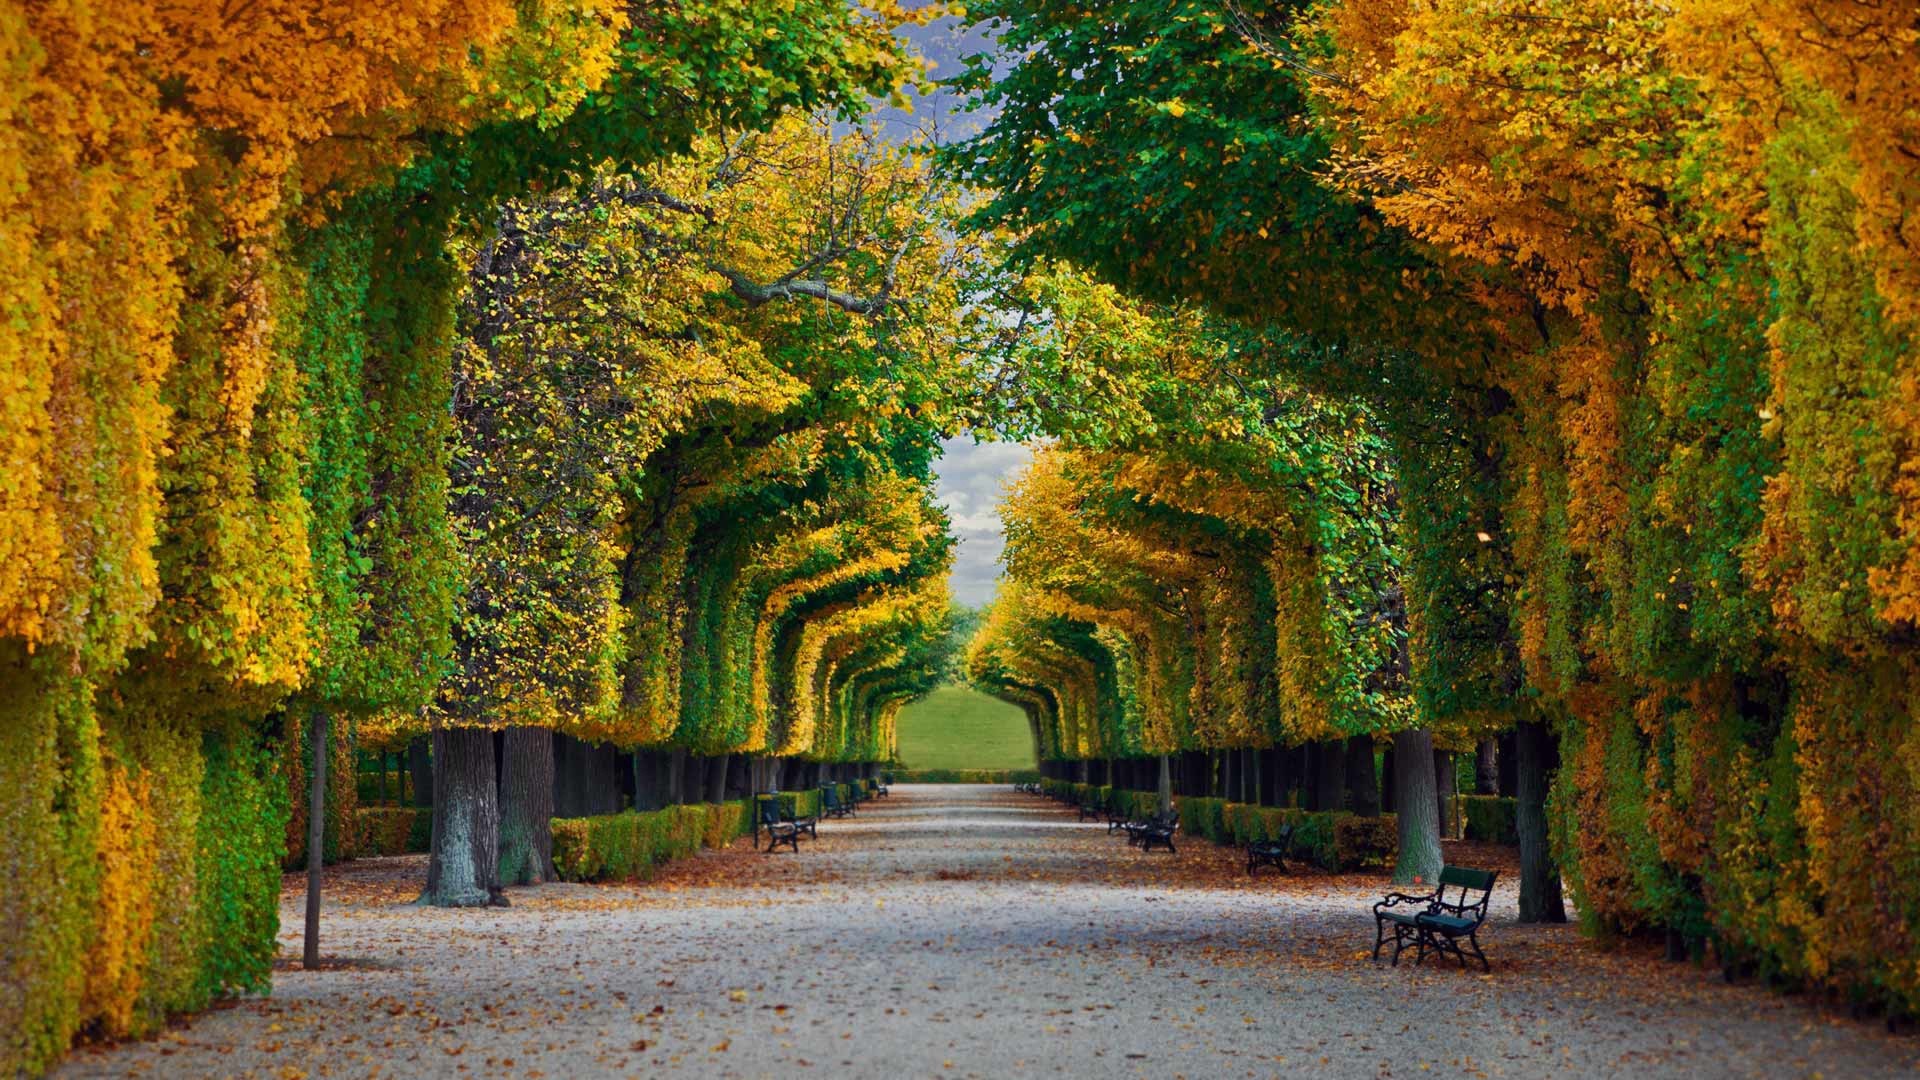 General 1920x1080 nature landscape trees forest fall park bench leaves Vienna Austria path Schloss Schönbrunn garden